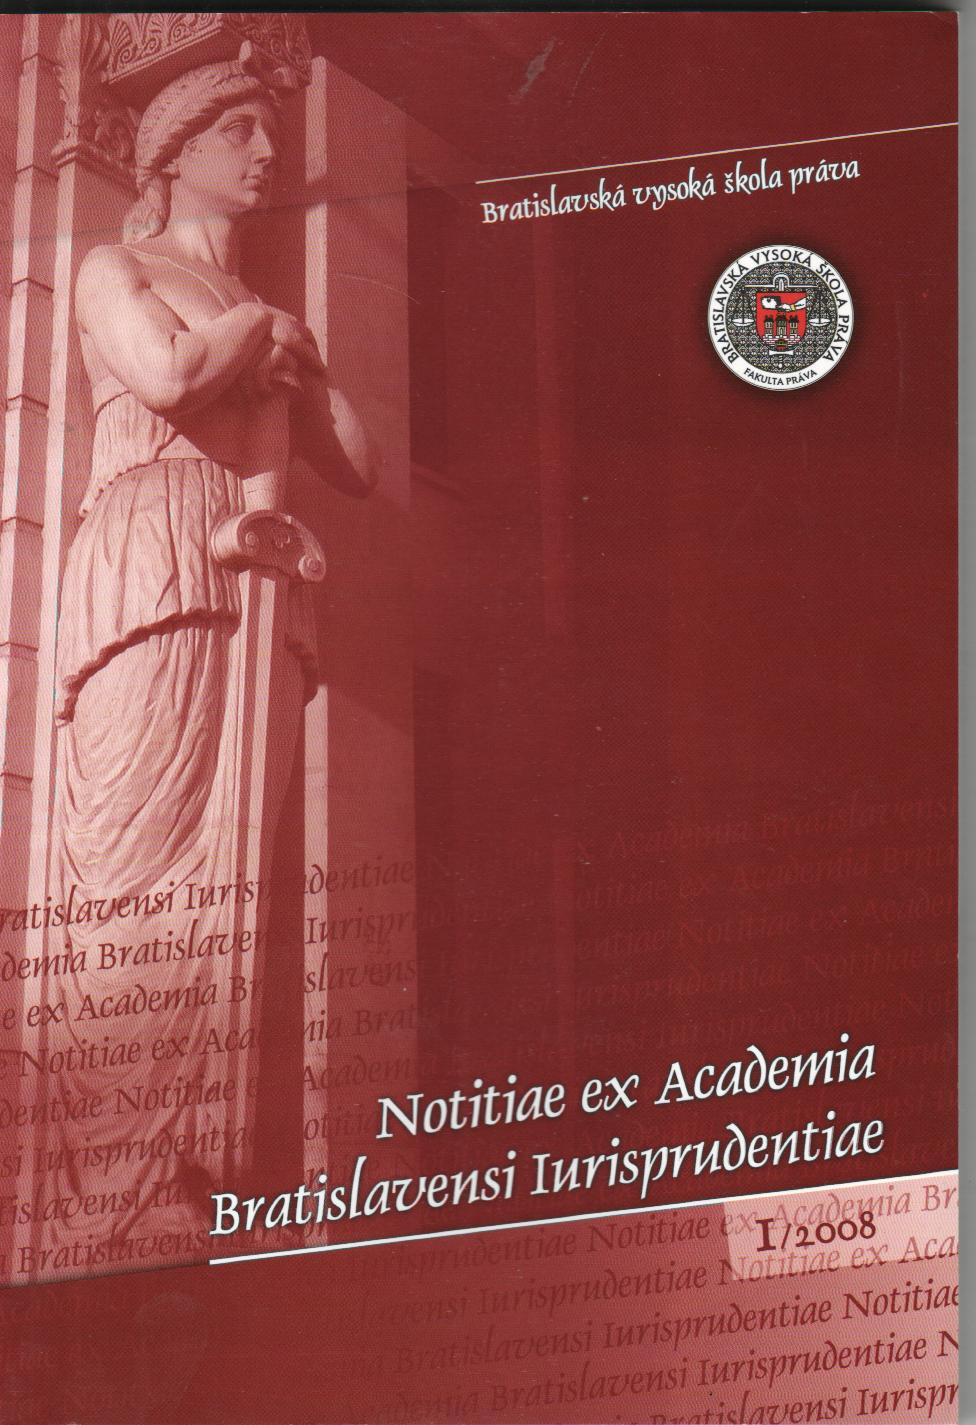 1/2008 Notitiae ex Academia Bratislavensi Iurisprudentiae